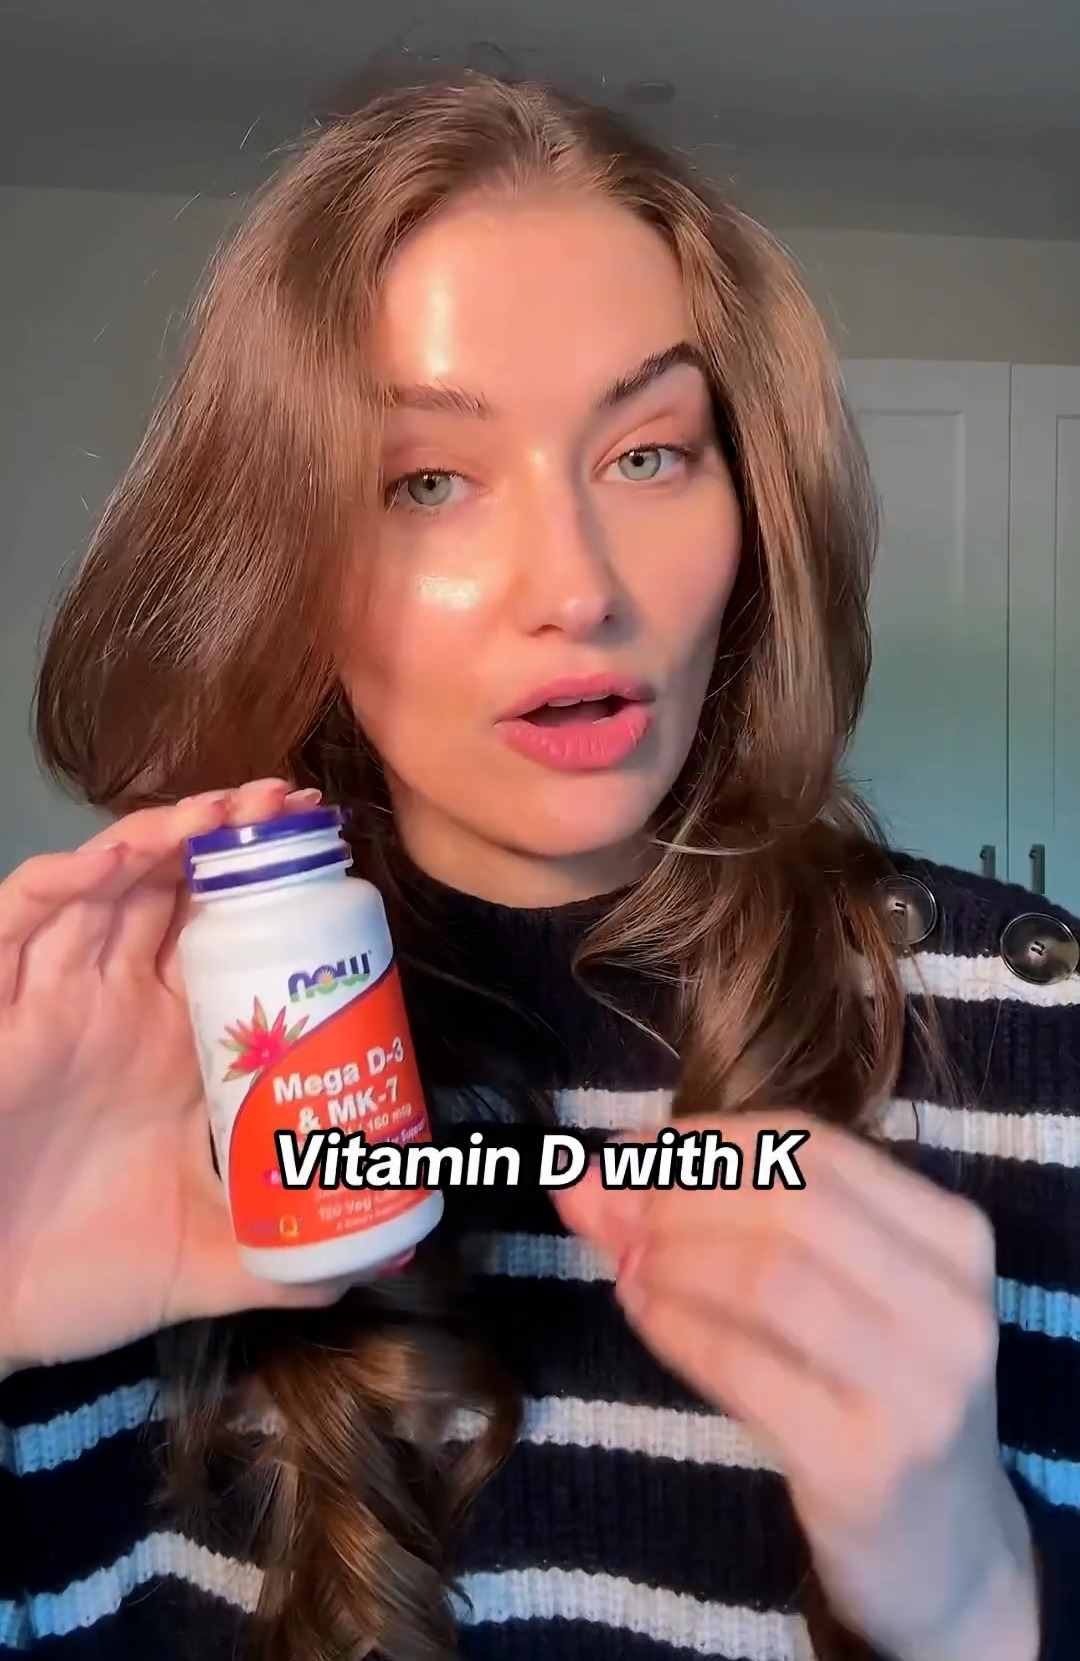 Um das Wachstum von Haaren und Nägeln zu fördern, nahm sie Vitamin-D-Präparate ein